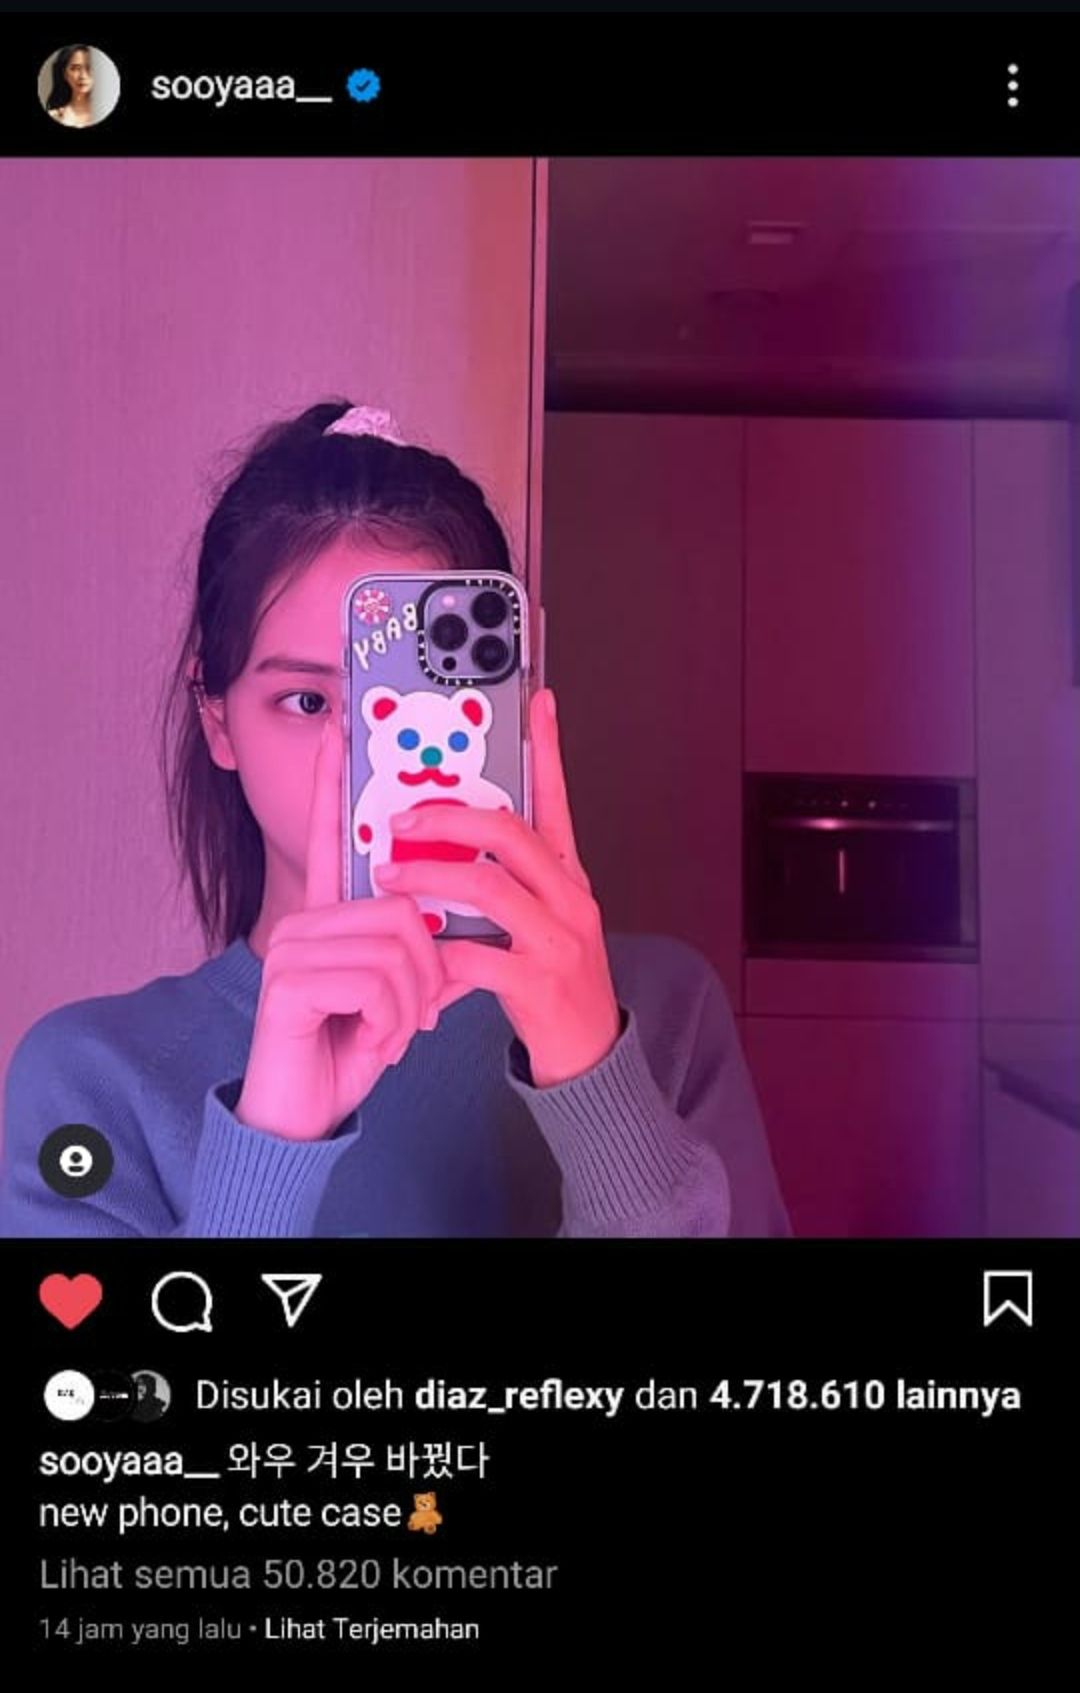 Potret case baru hp Jisoo/sooyaaa_/Screenshot Instagram